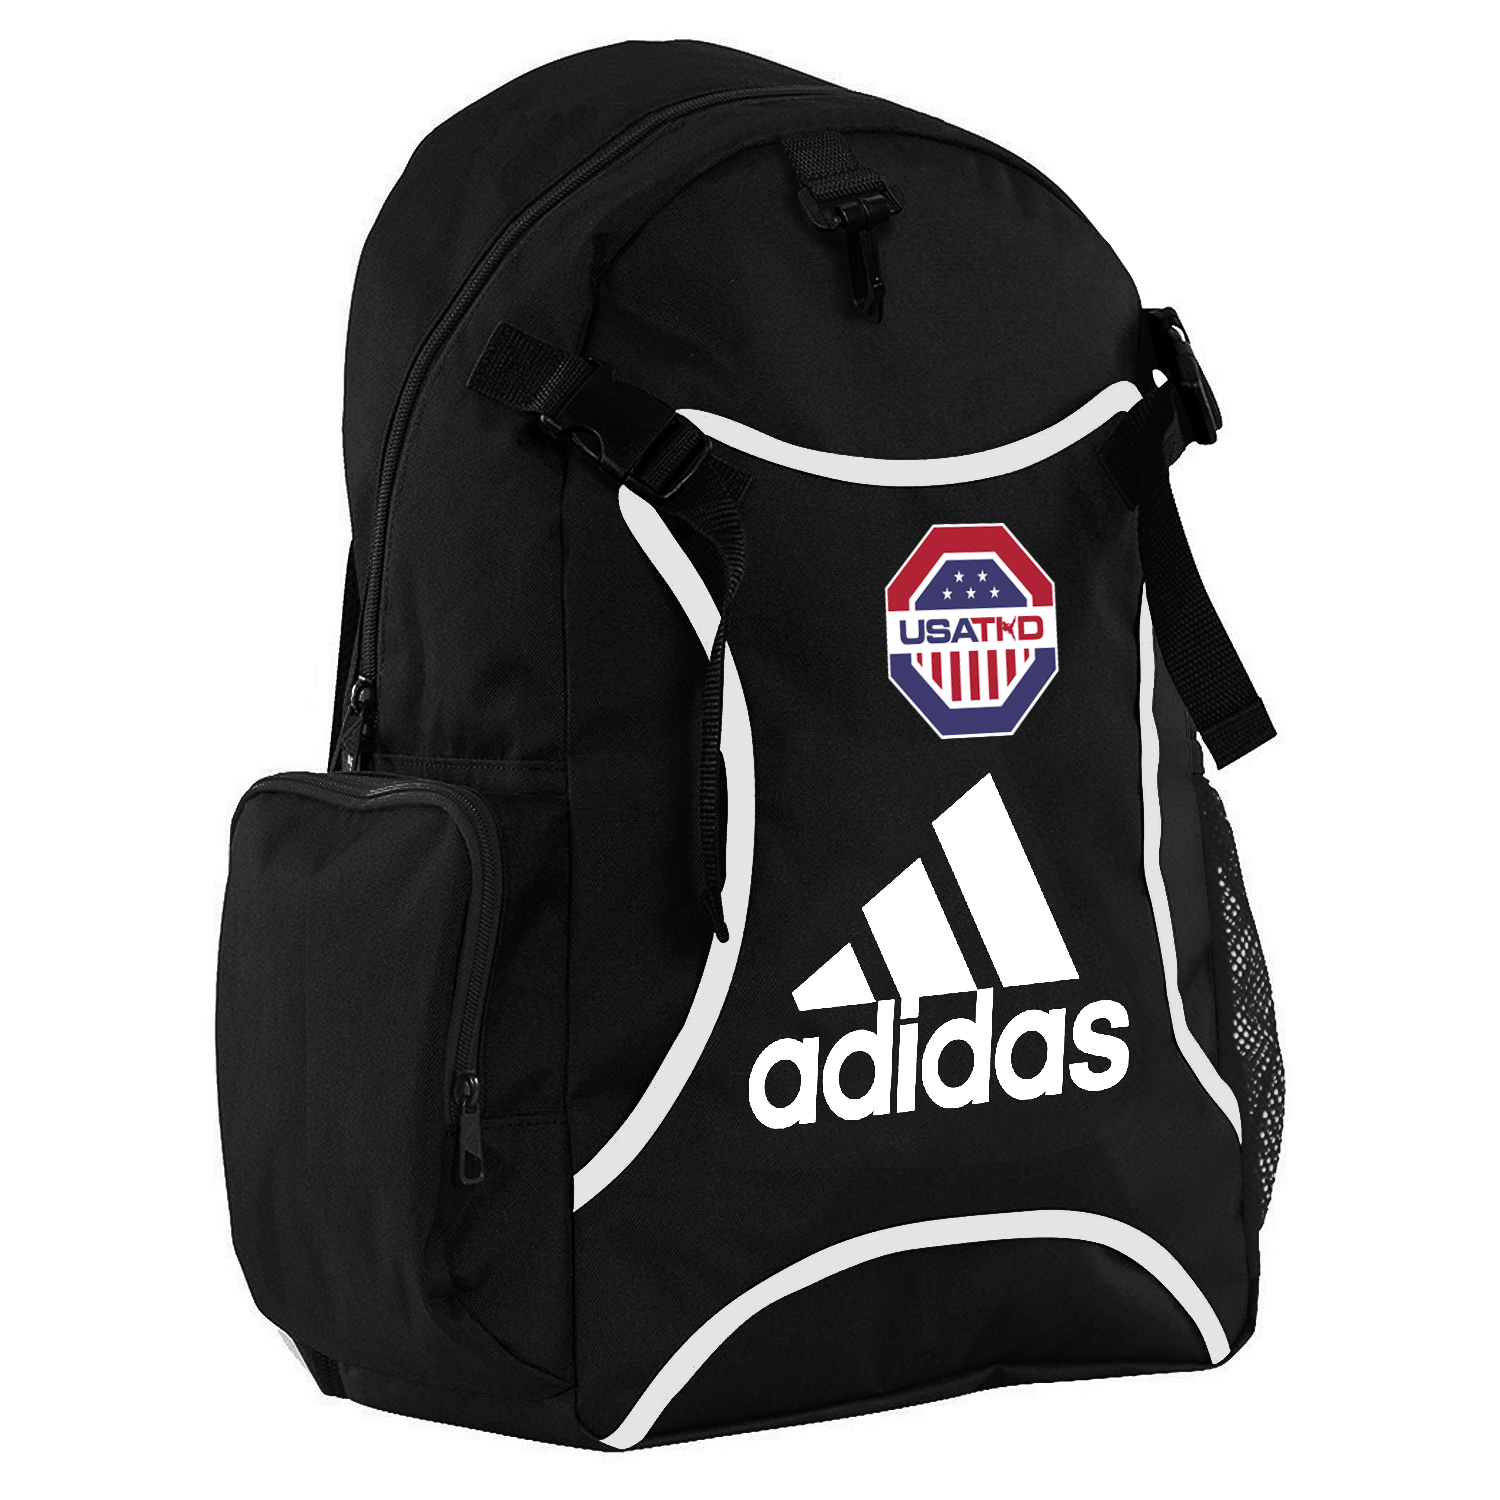 USAT adidas Taekwondo Backpack with Equipment Holder